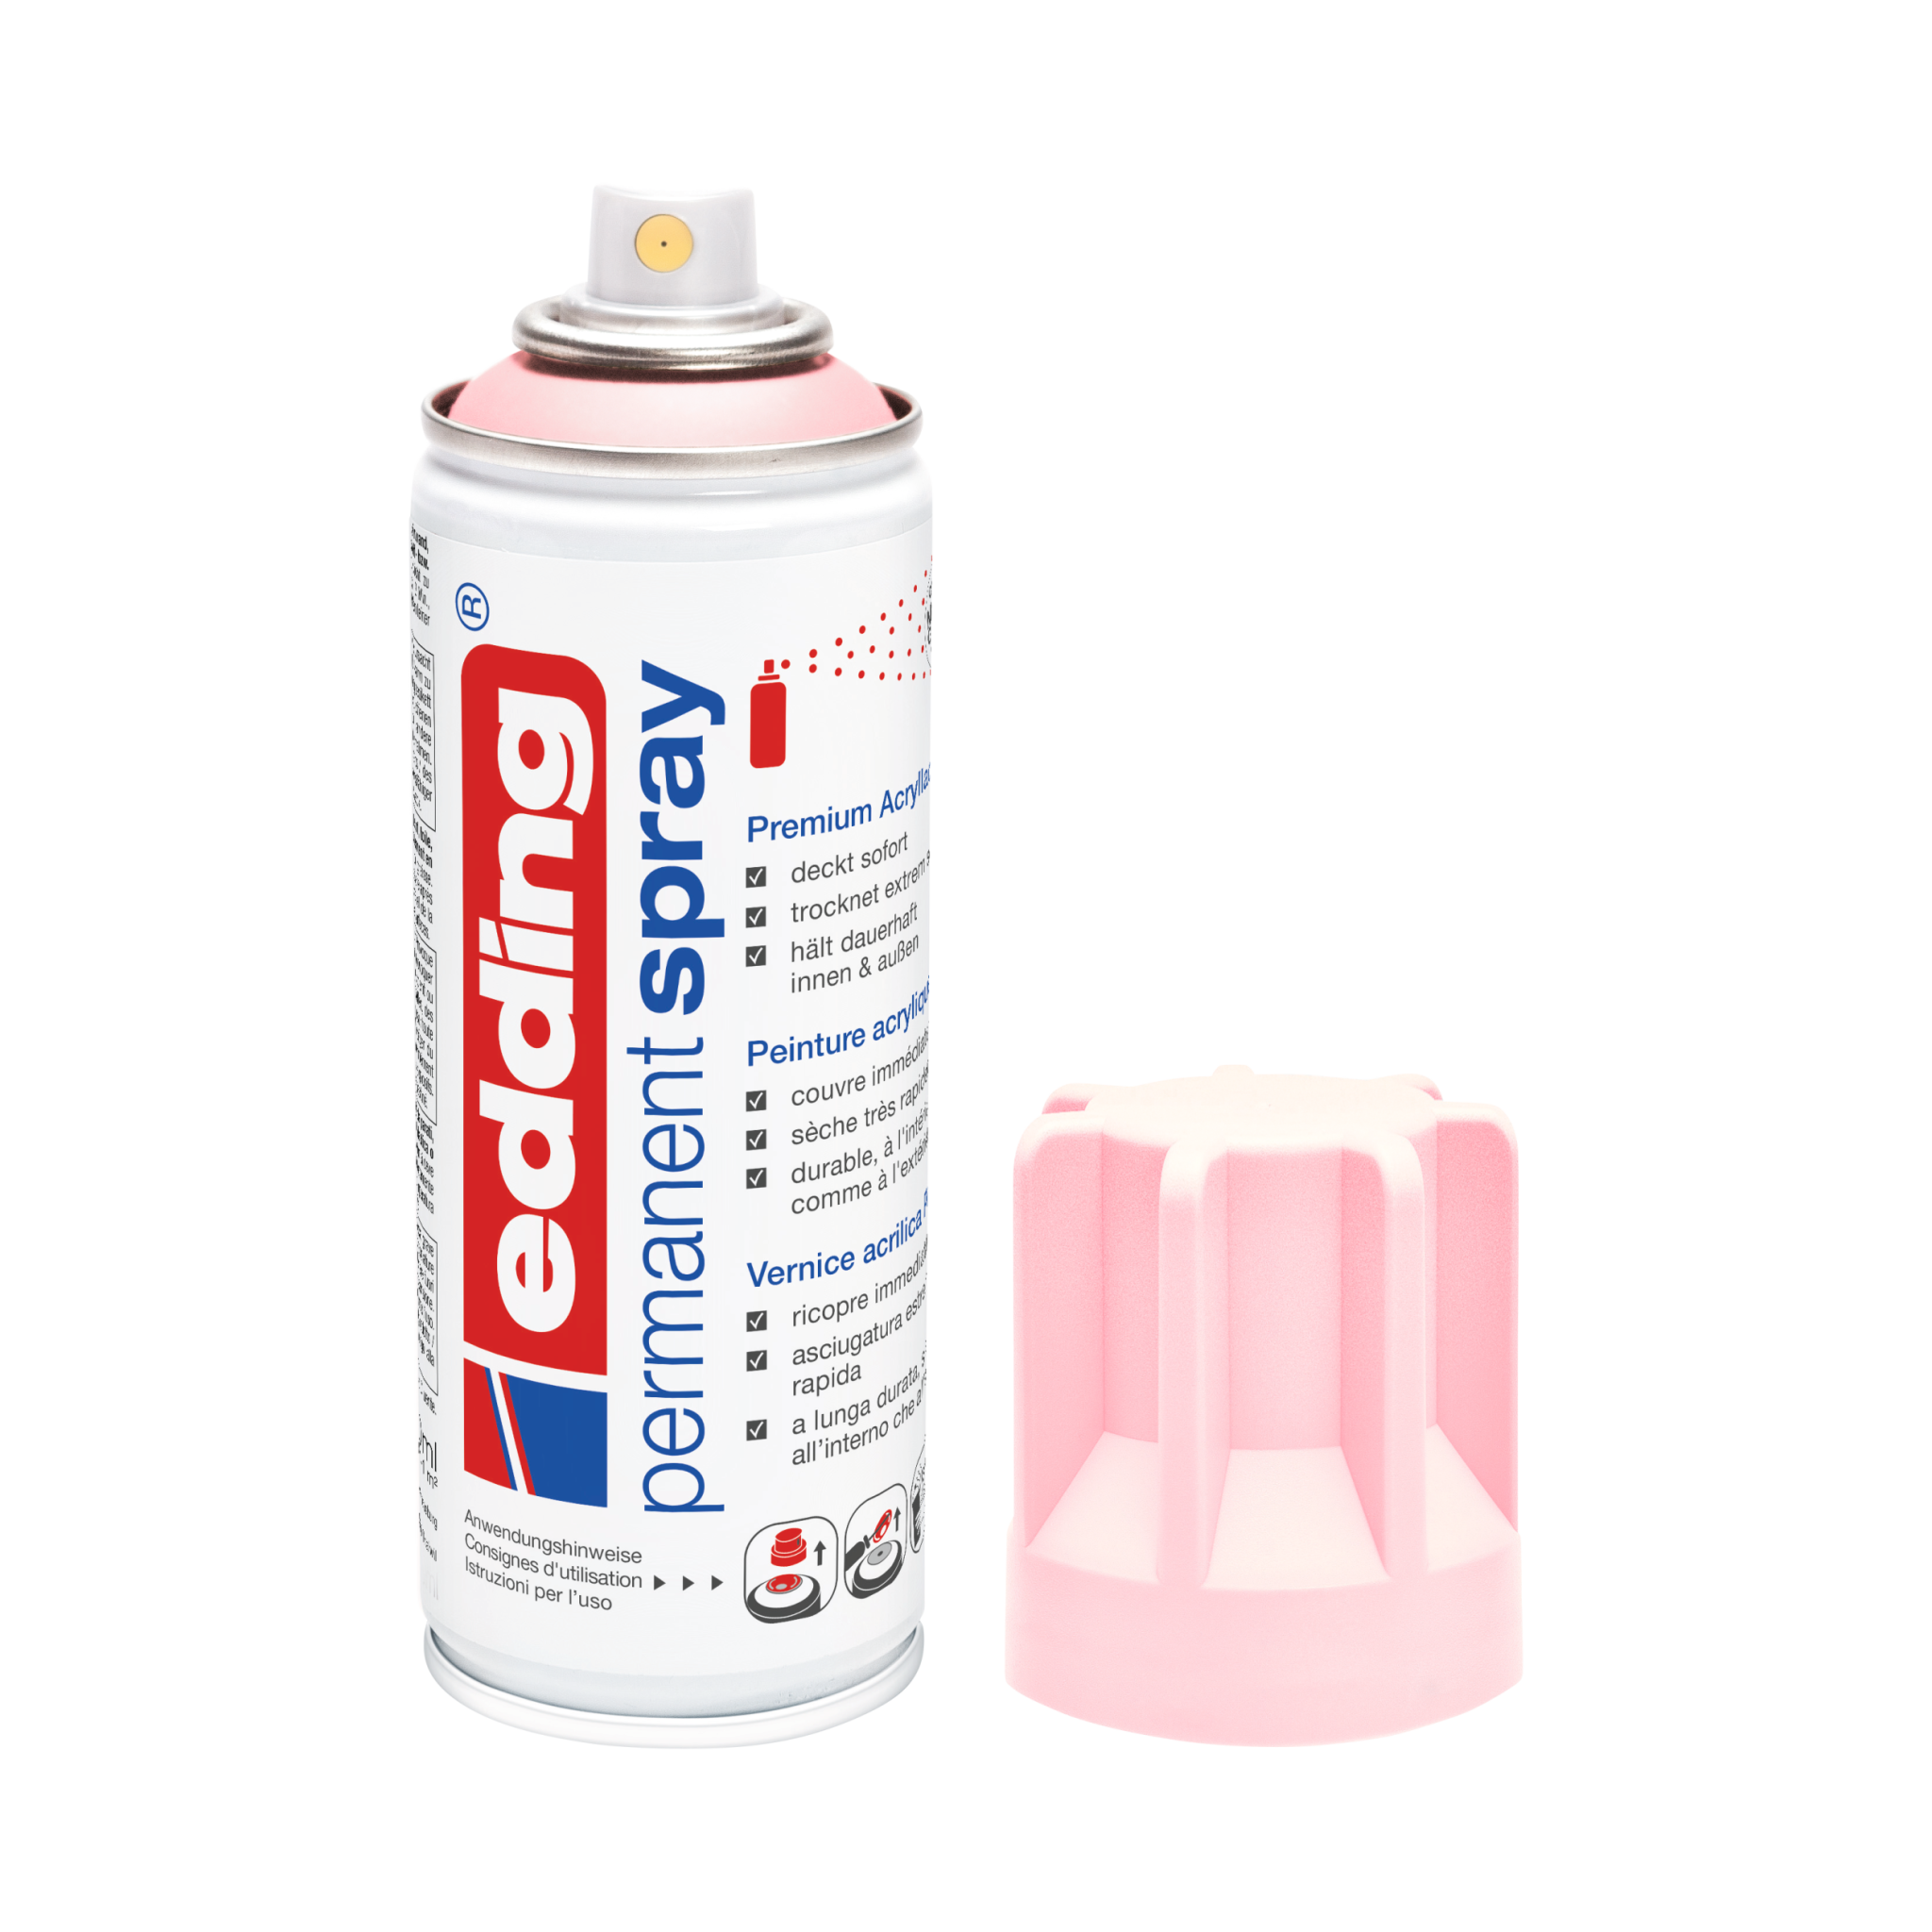 Eine Dose der Marke edding, edding 5200 Permanentspray Acryllack Pastell & sanfte Farben in Weiß, von der die Kappe abgenommen und zur Seite gelegt wurde.